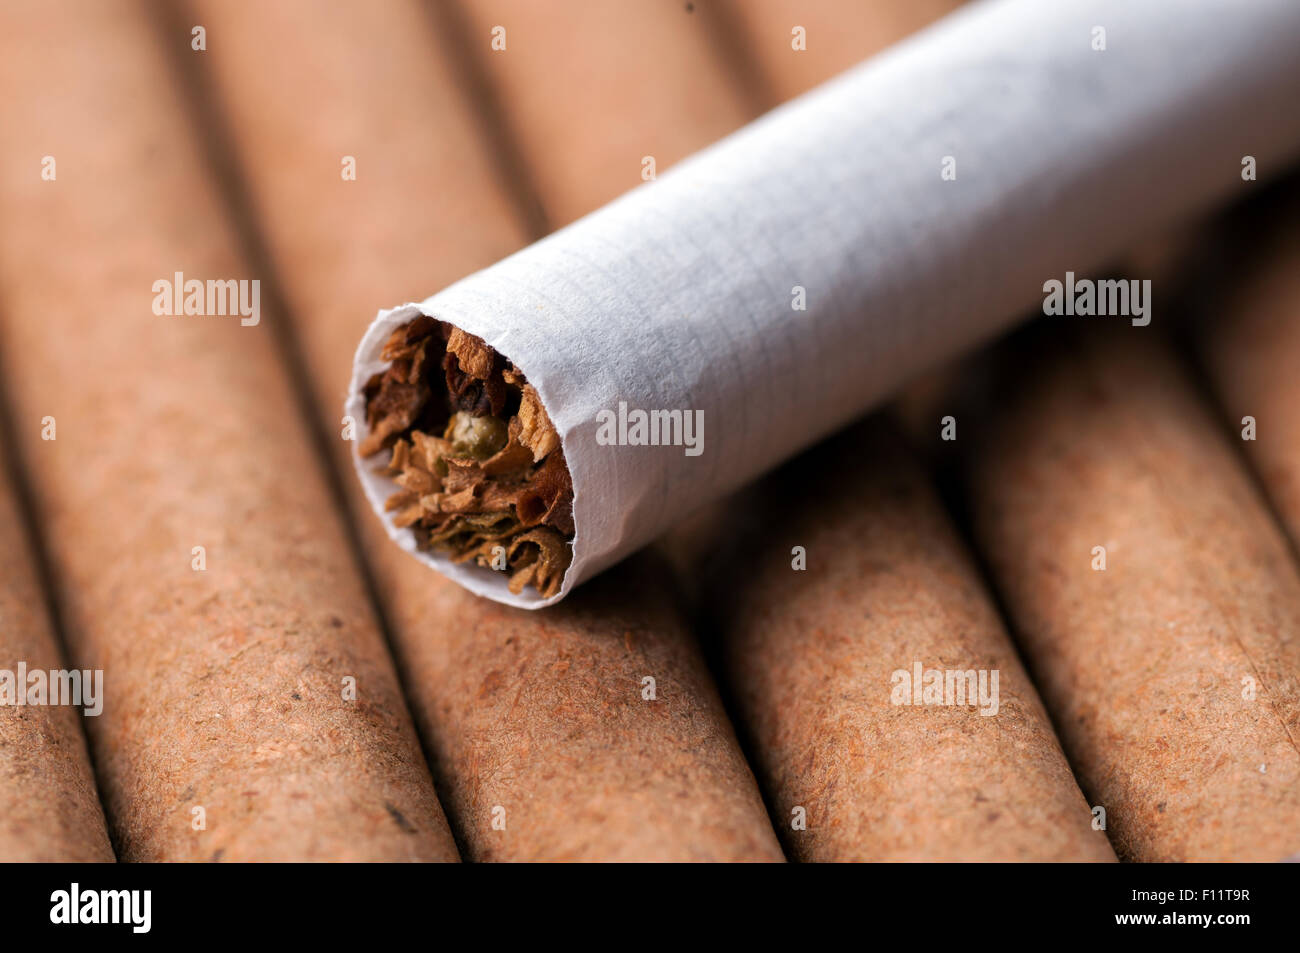 Tobacco in cigarette on dark cigarettes close up Stock Photo